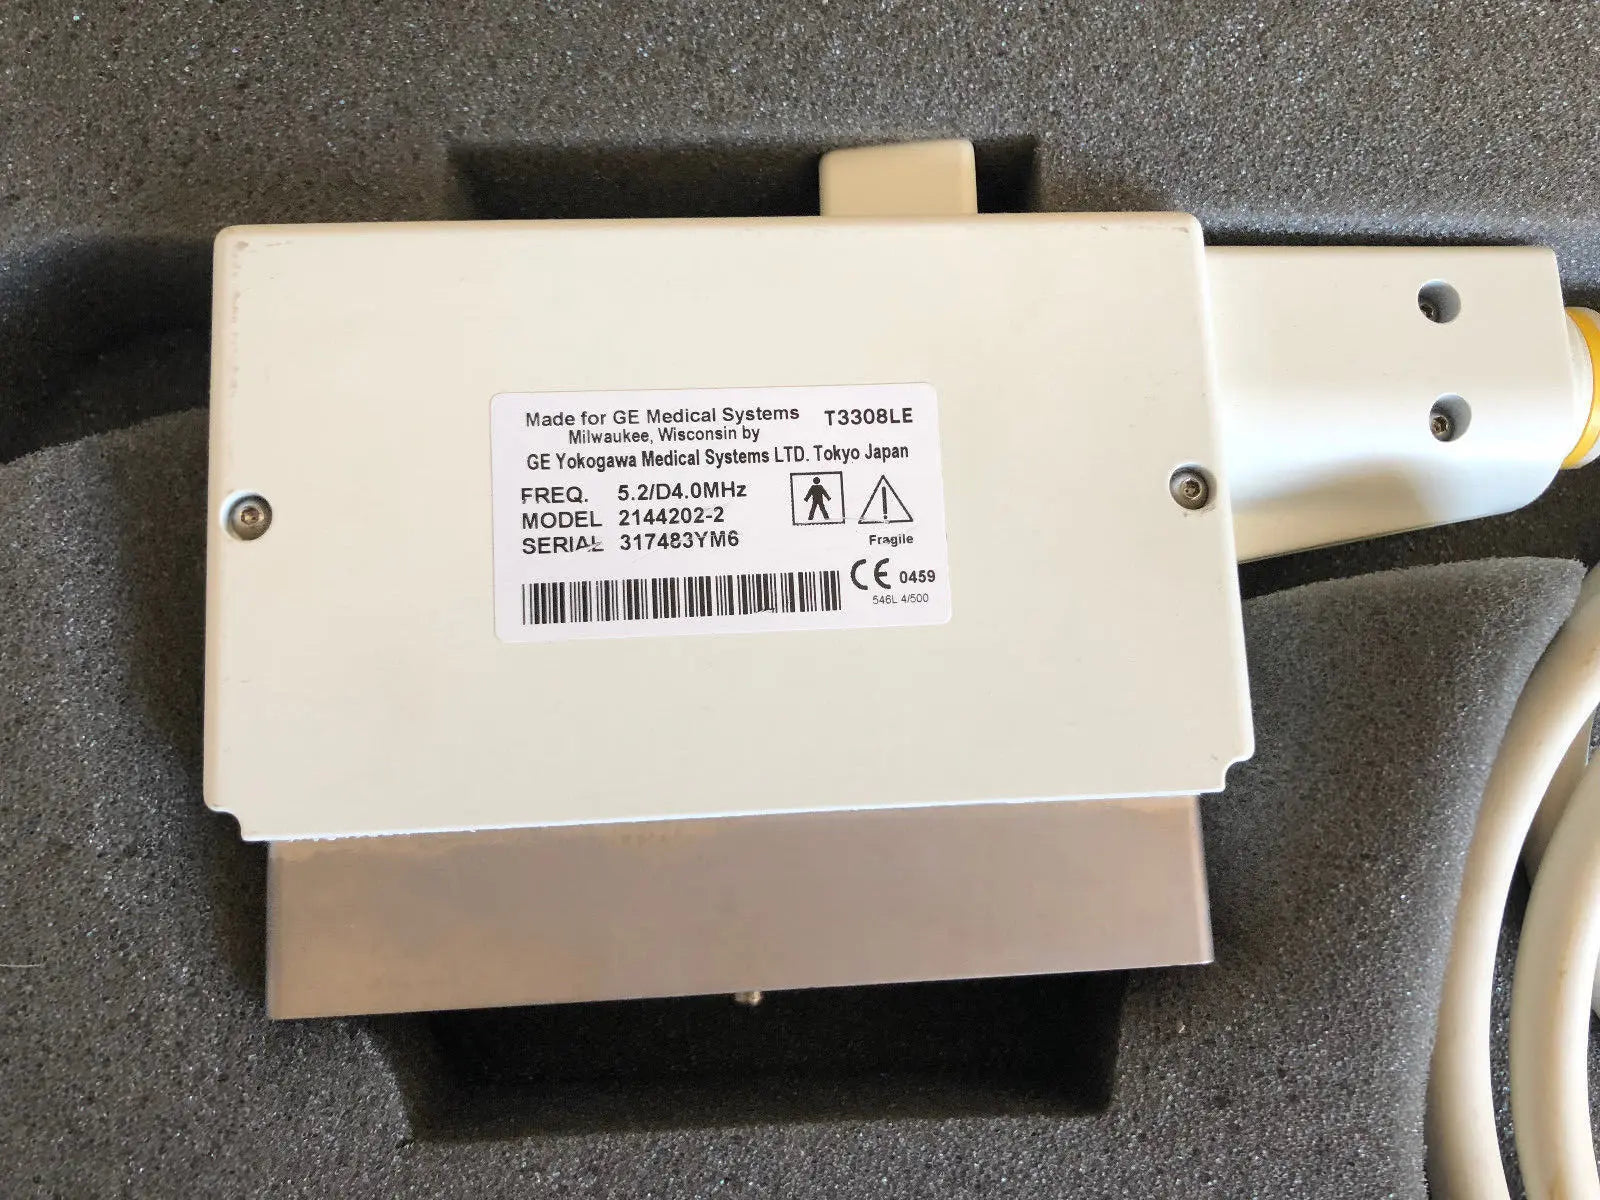 GE 546L ultrasound transducer from a LOGIQ L9